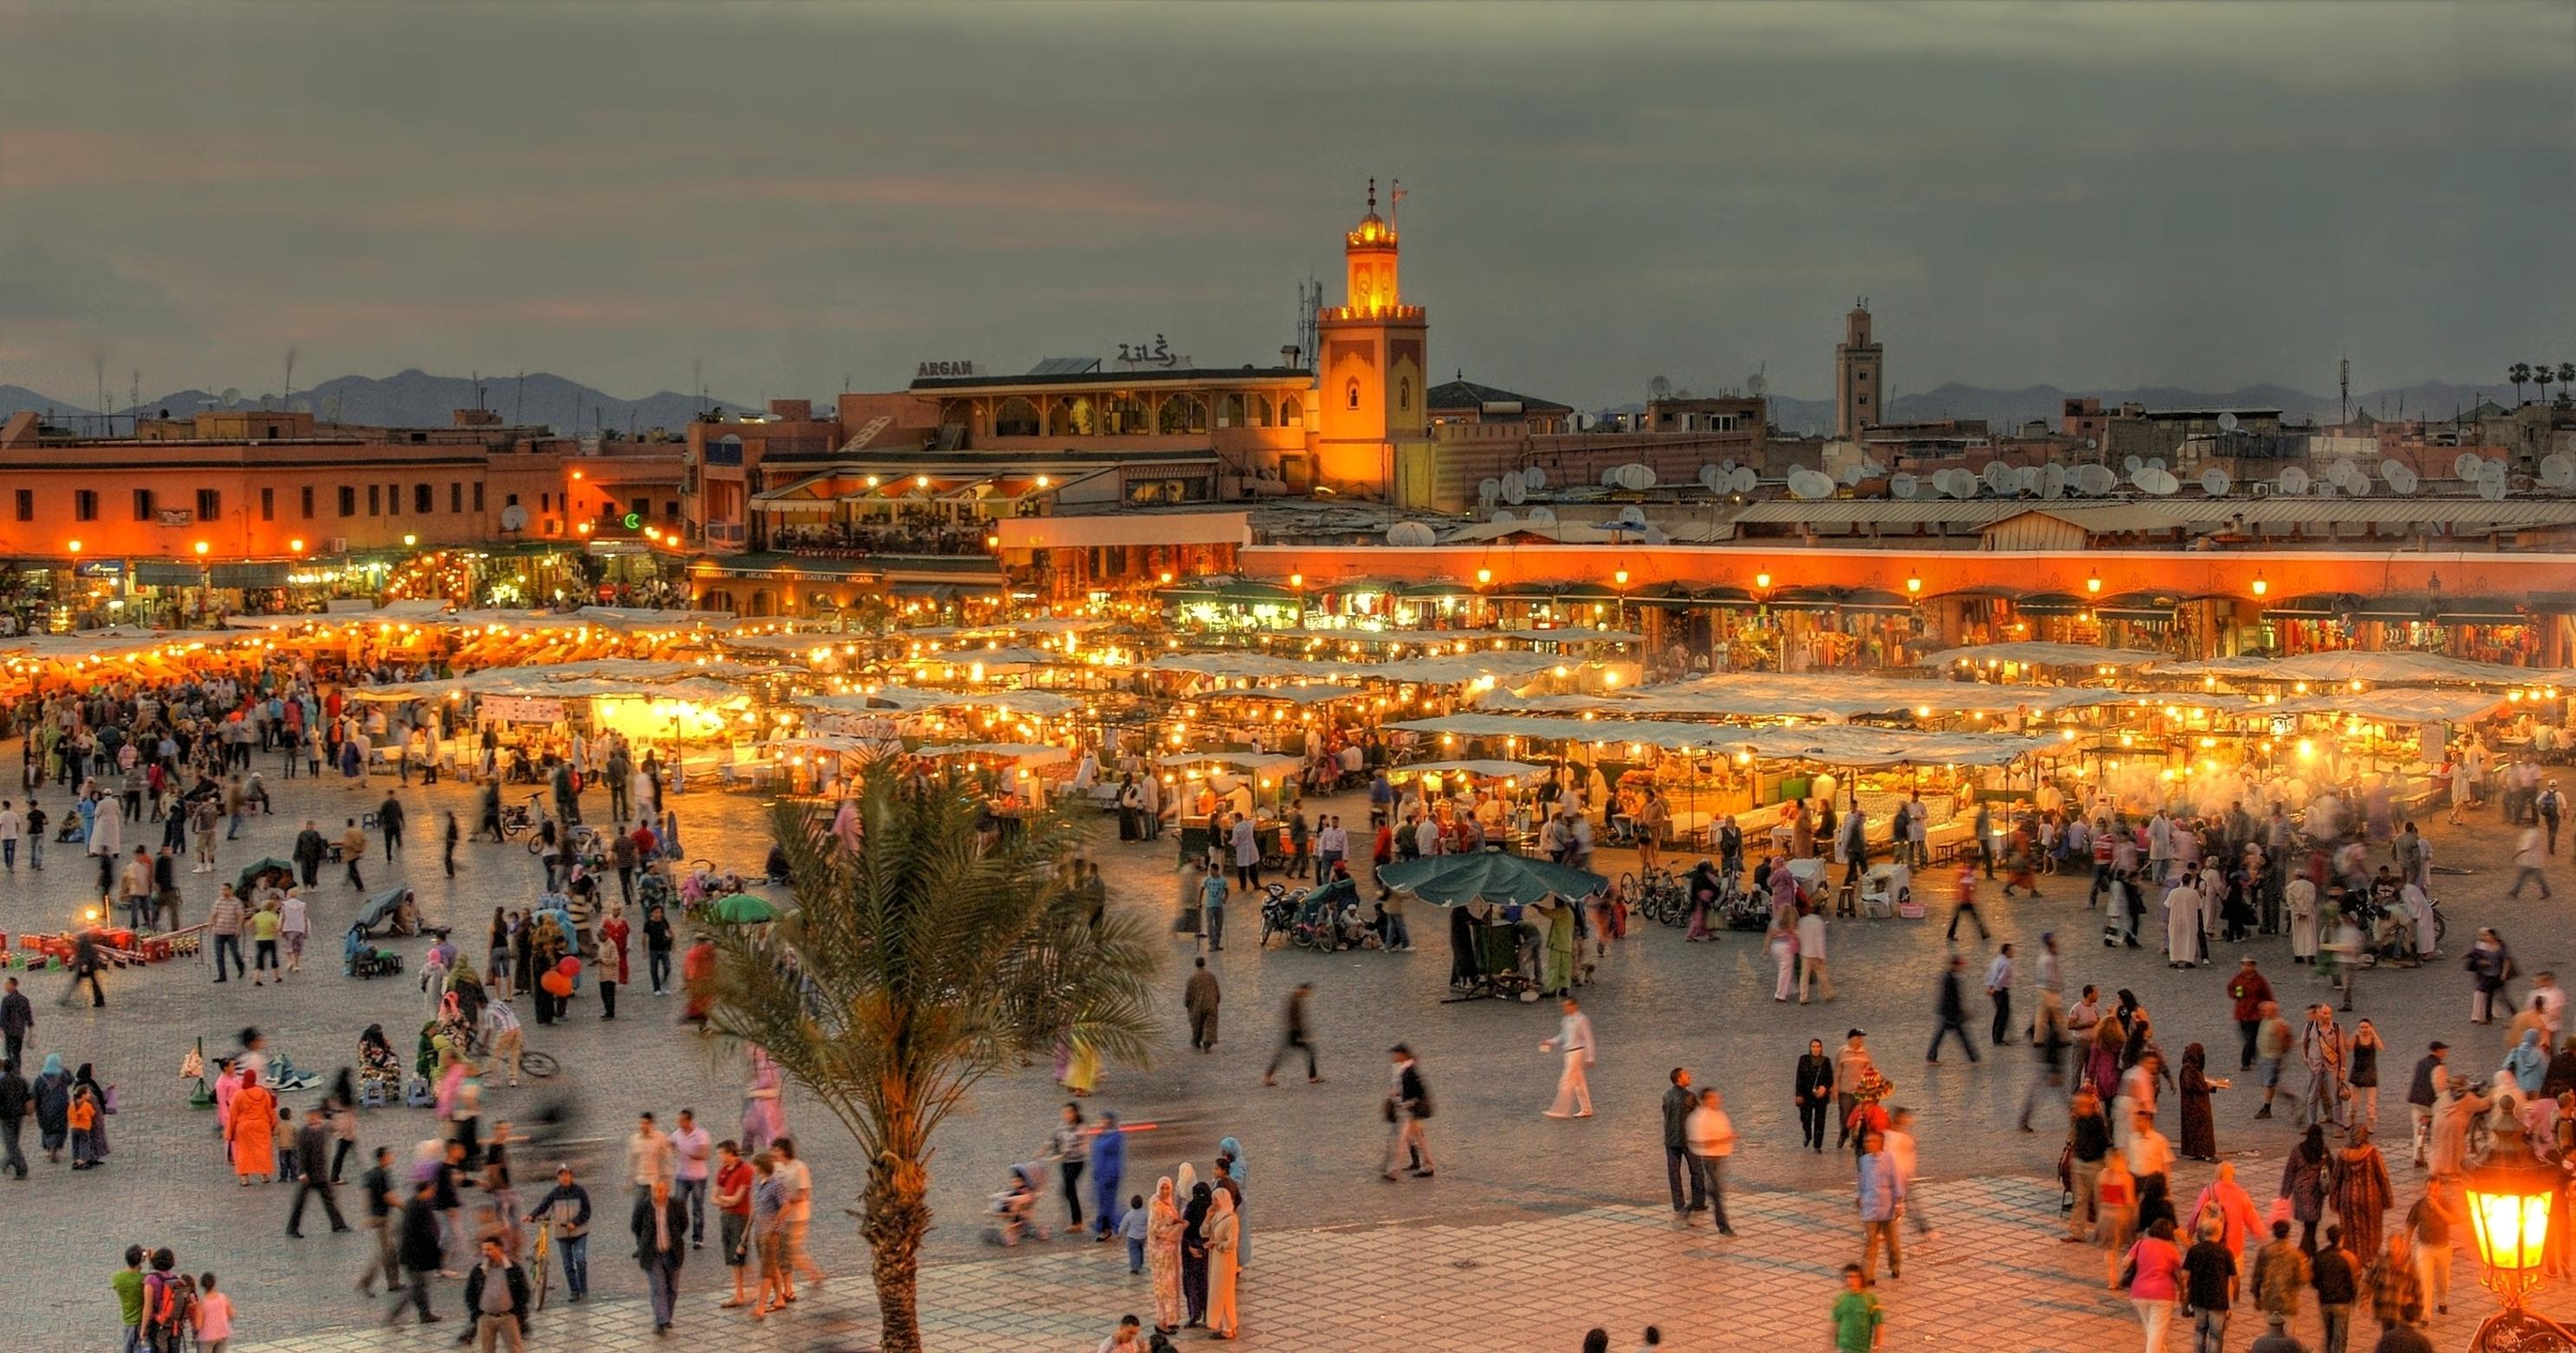 تعرف على 5 حقائق هامة غائبة عن البعض حول المغرب !!